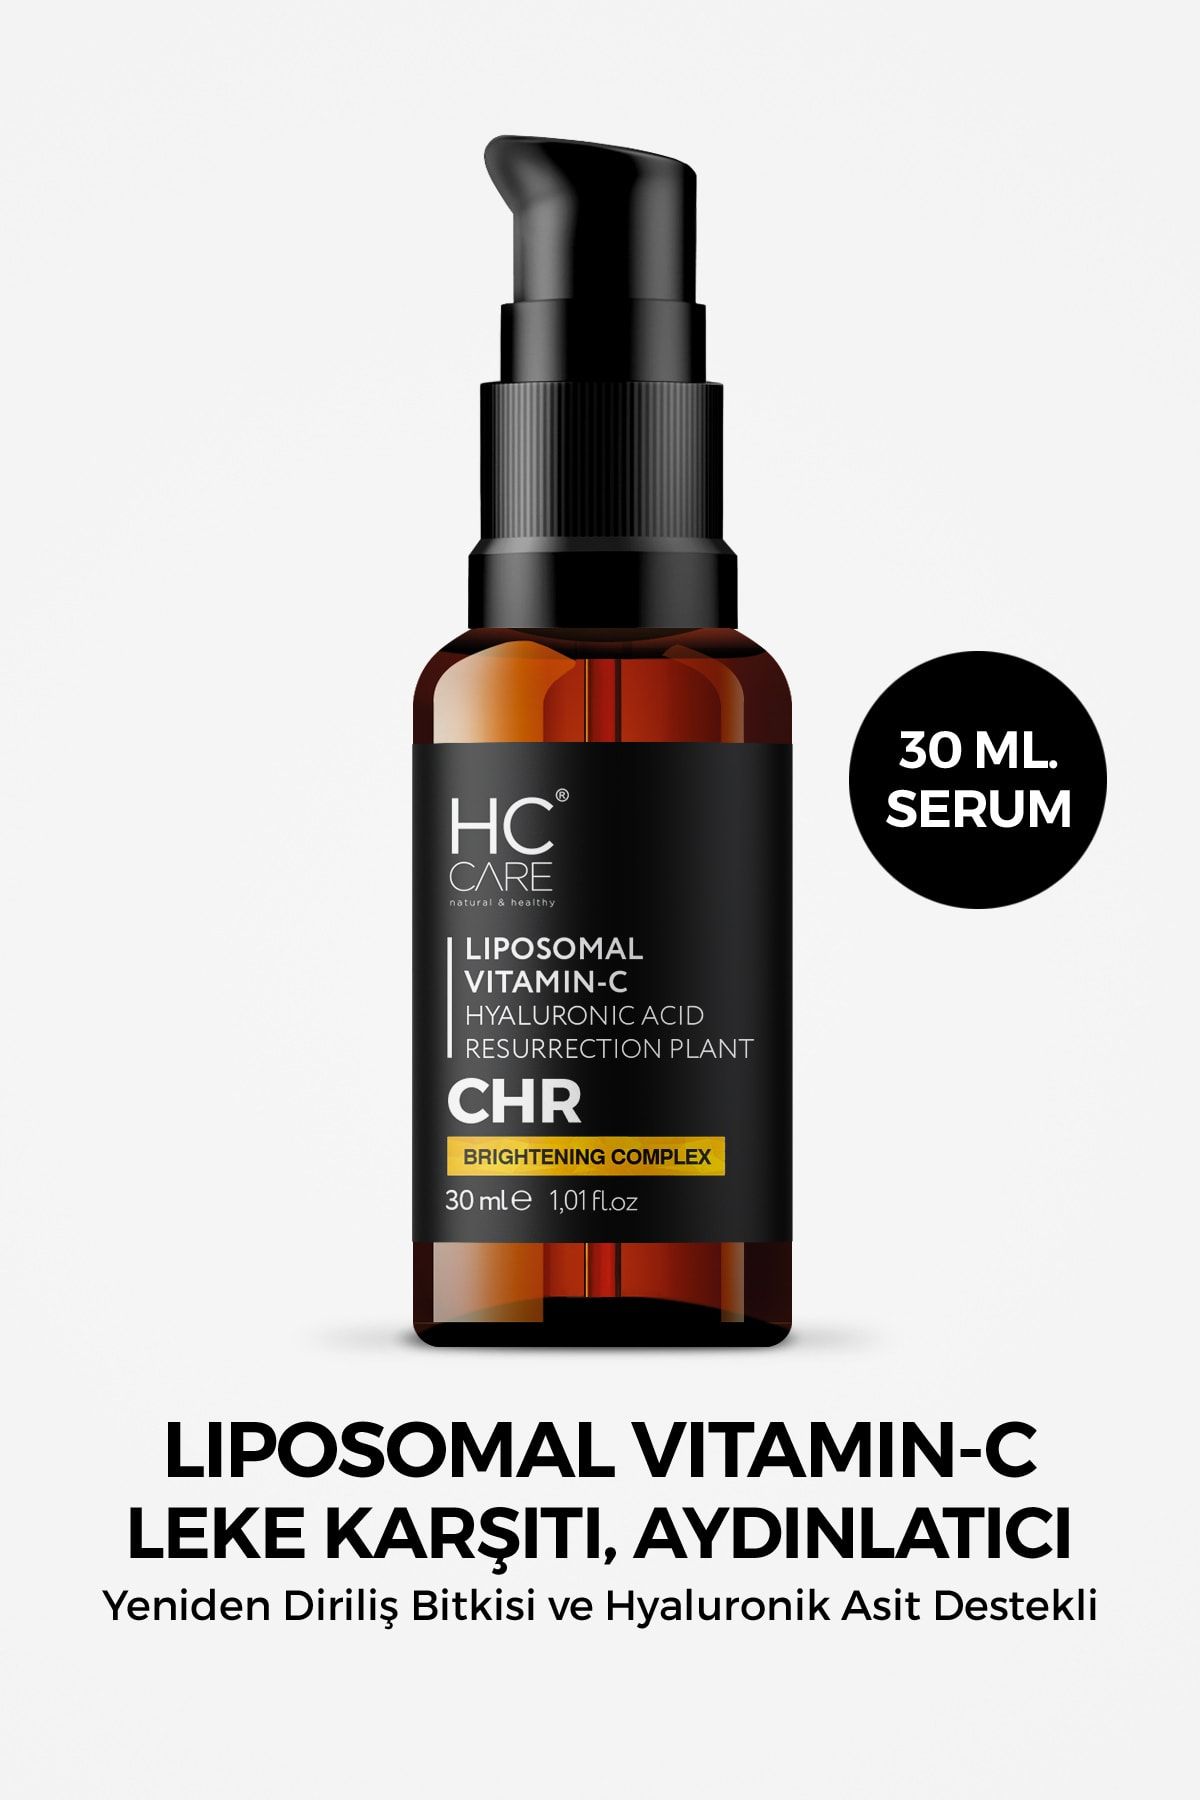 HC Care C Vitamini (ASCORBİC ASİT) Serum- Leke Karşıtı Aydınlatıcı & Cilt Tonu Eşitleyici - 30 Ml.